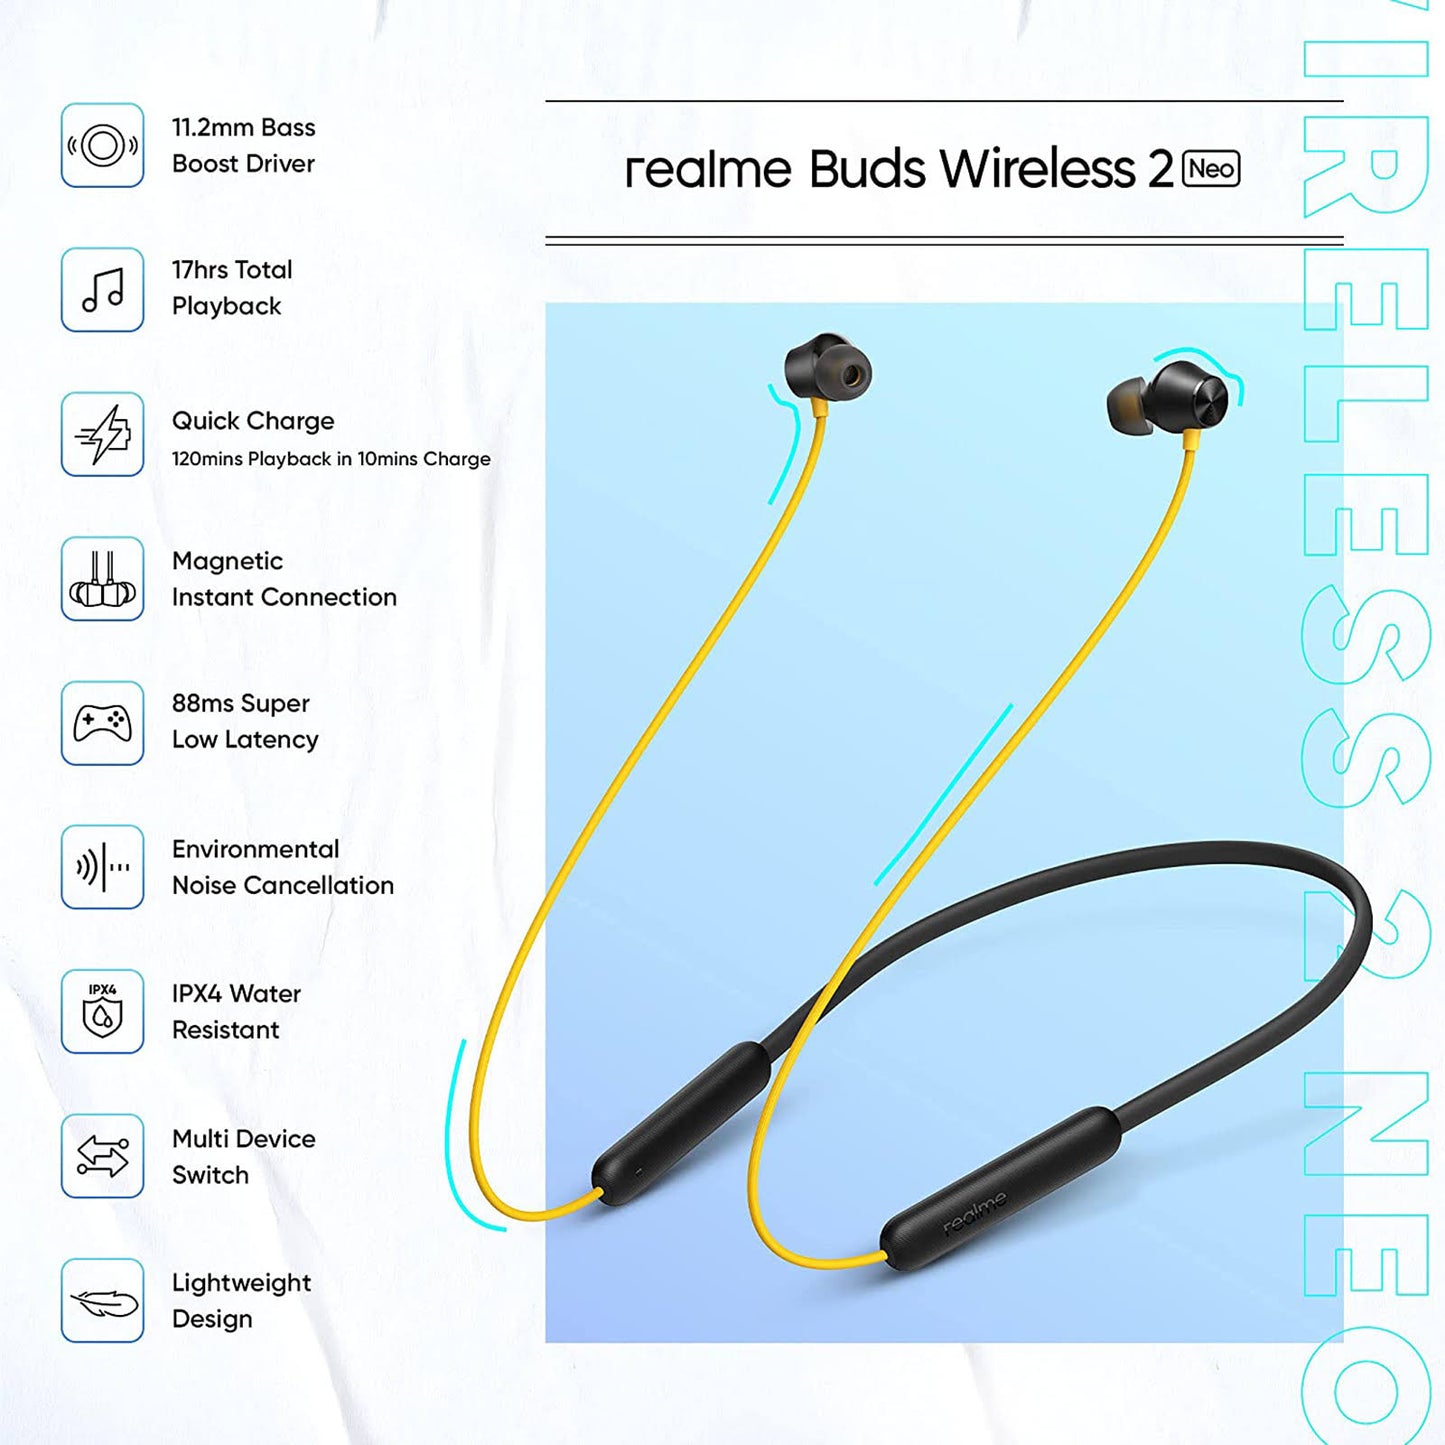 Realme Buds Wireless 2 Neo